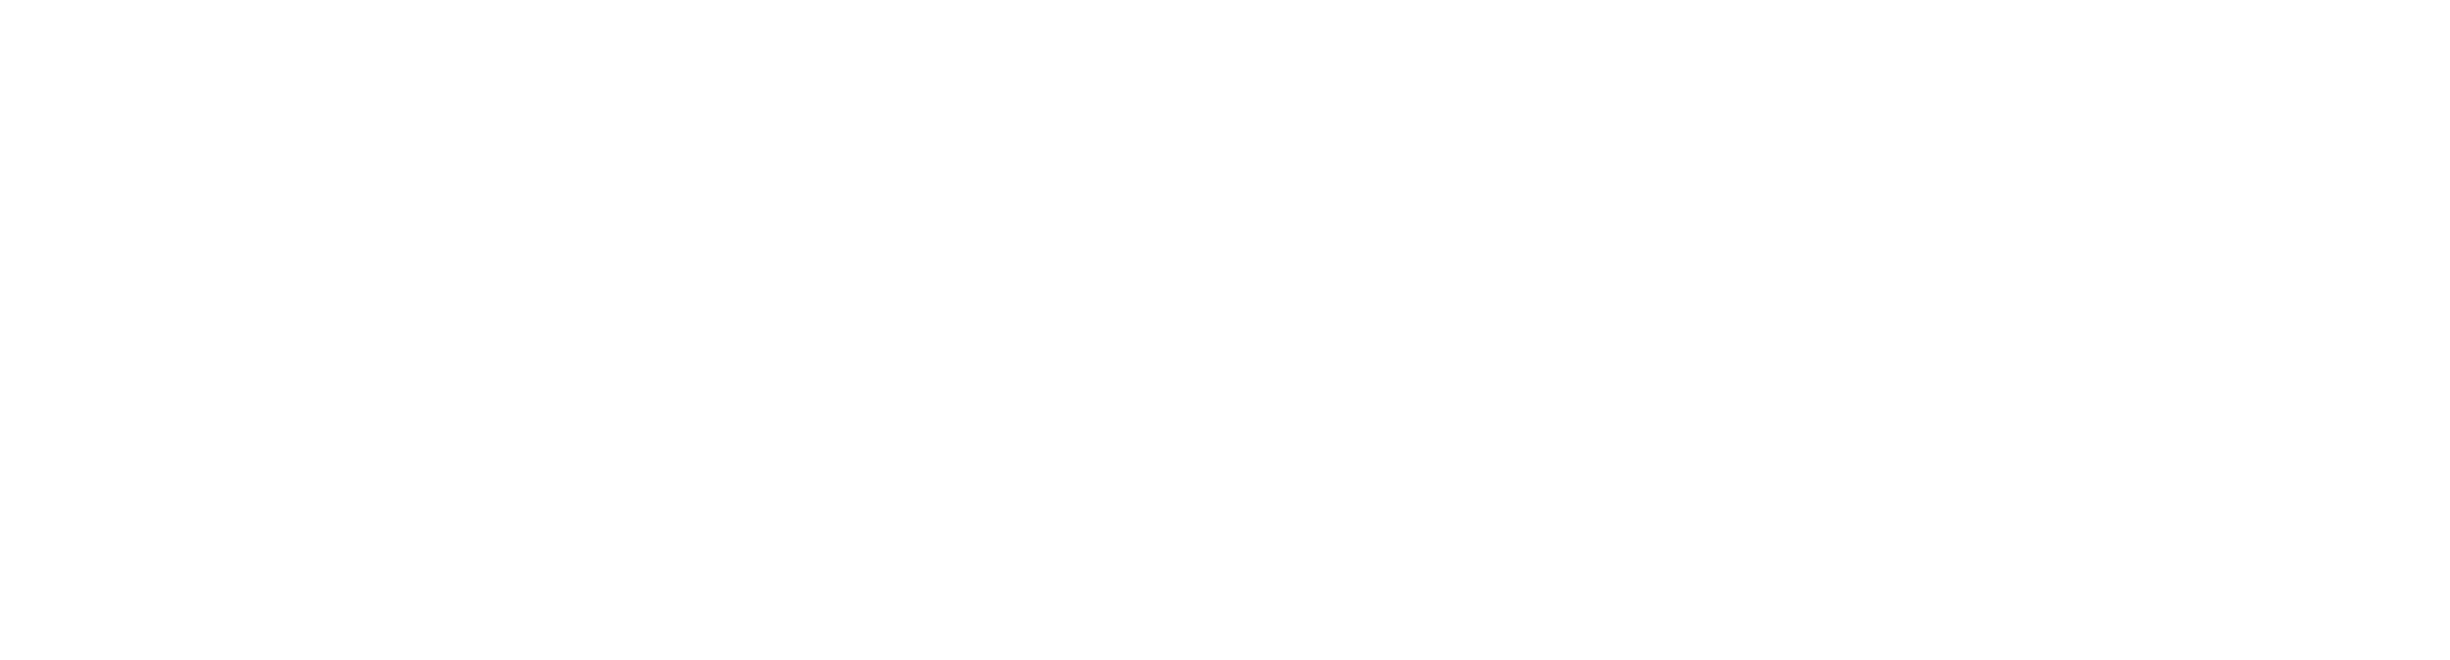 Sociedad Argentina de Patologia de la Columna Vertebral